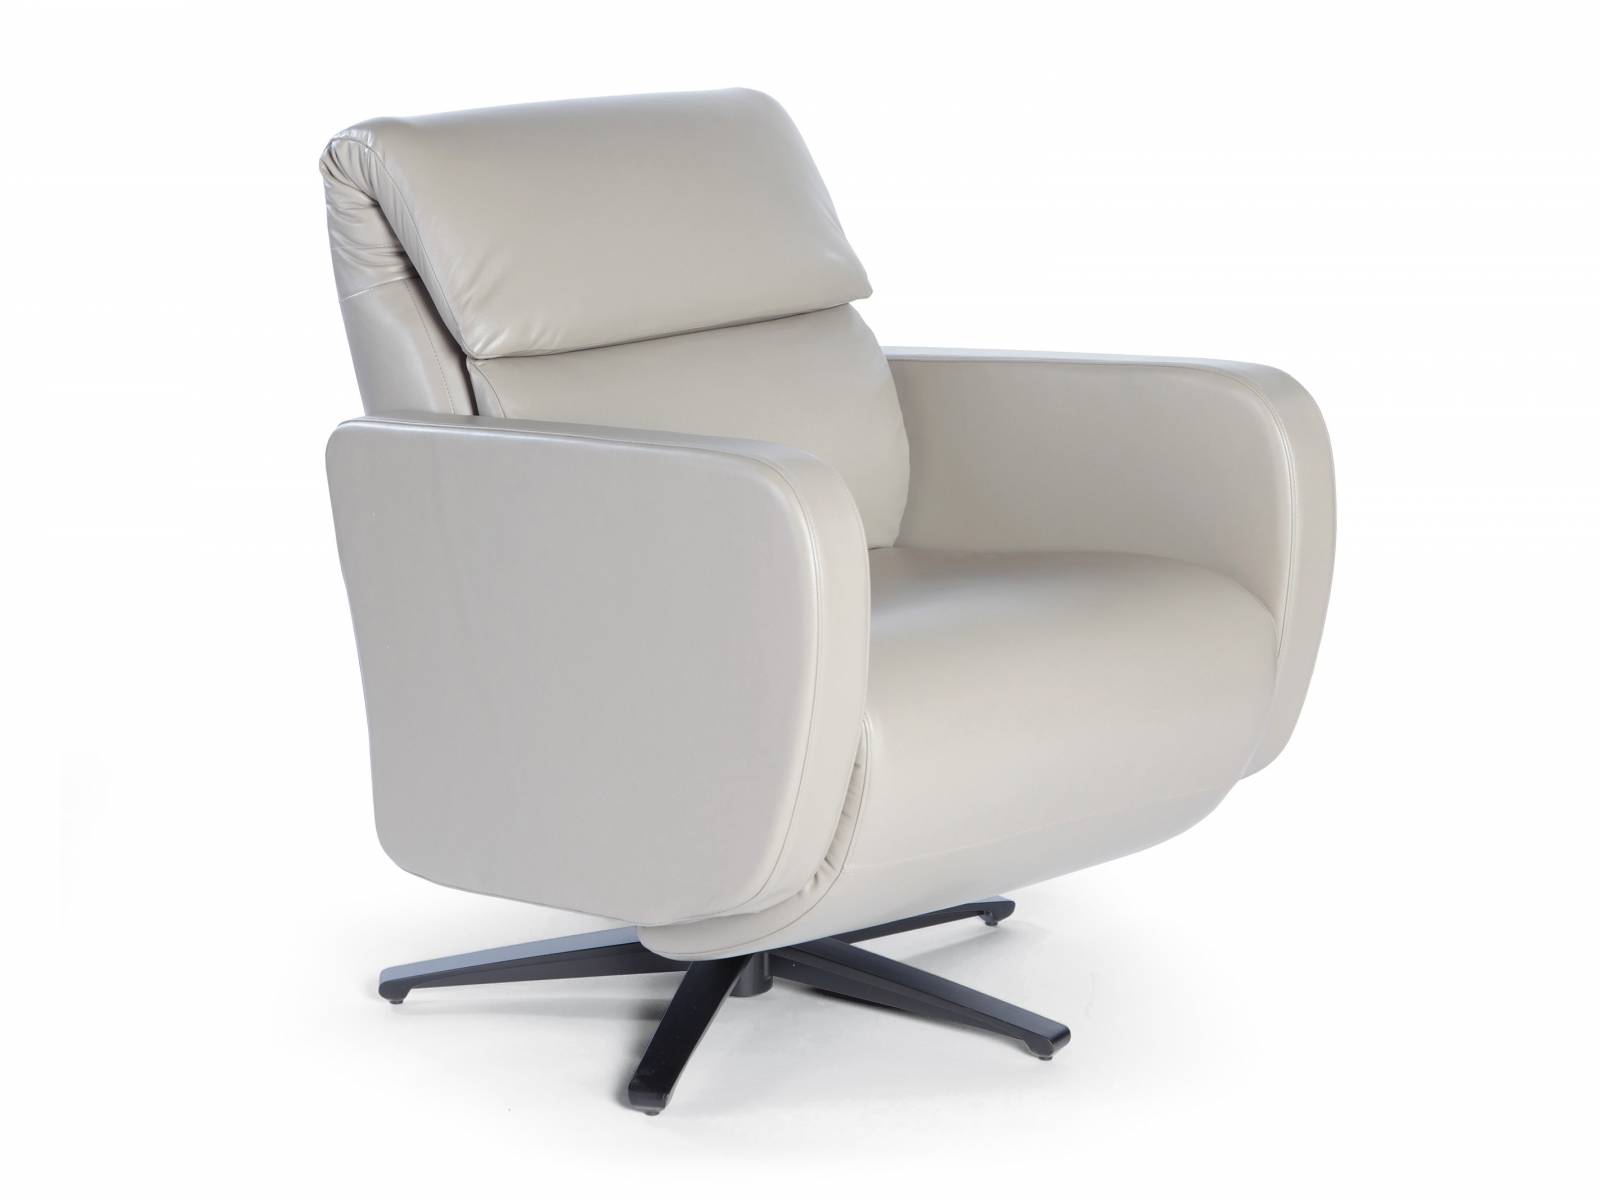 «FLUX» ist ein Sessel, der per Knopfdruck Rückenlehne und Fussteil ausfährt und so durchaus zu einem Nickerchen einlädt. Sitztiefe, Rückenhöhe sowie Breite des Sessels können den individuellen Bedürfnissen angepasst werden. Strässle.